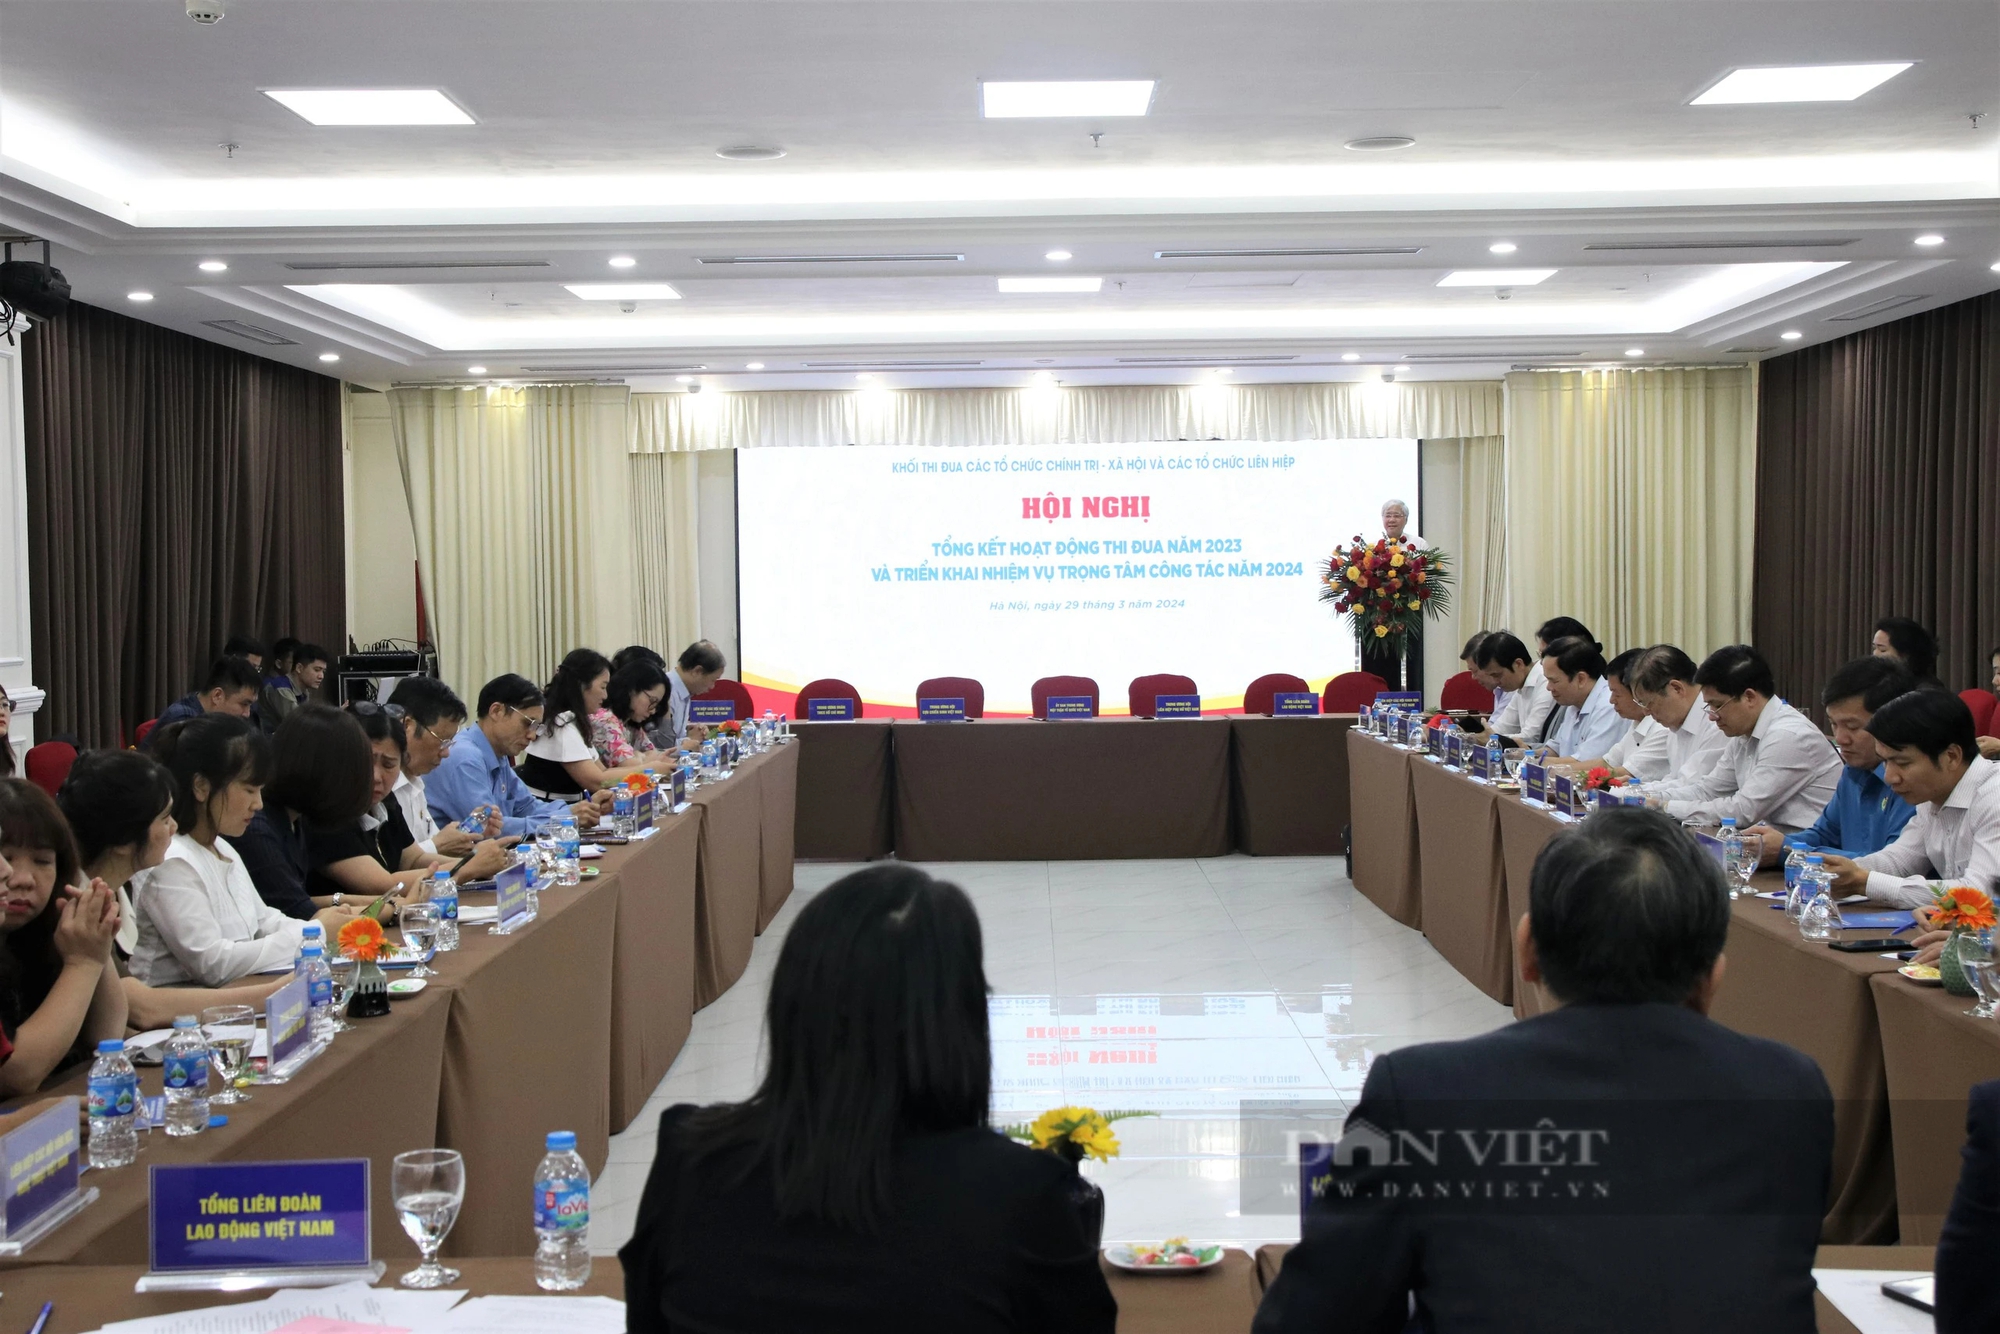 T.Ư Hội NDVN triển khai hiệu quả các phong trào do Thủ tướng phát động, ủng hộ 50 nhà tình nghĩa ở Điện Biên- Ảnh 1.